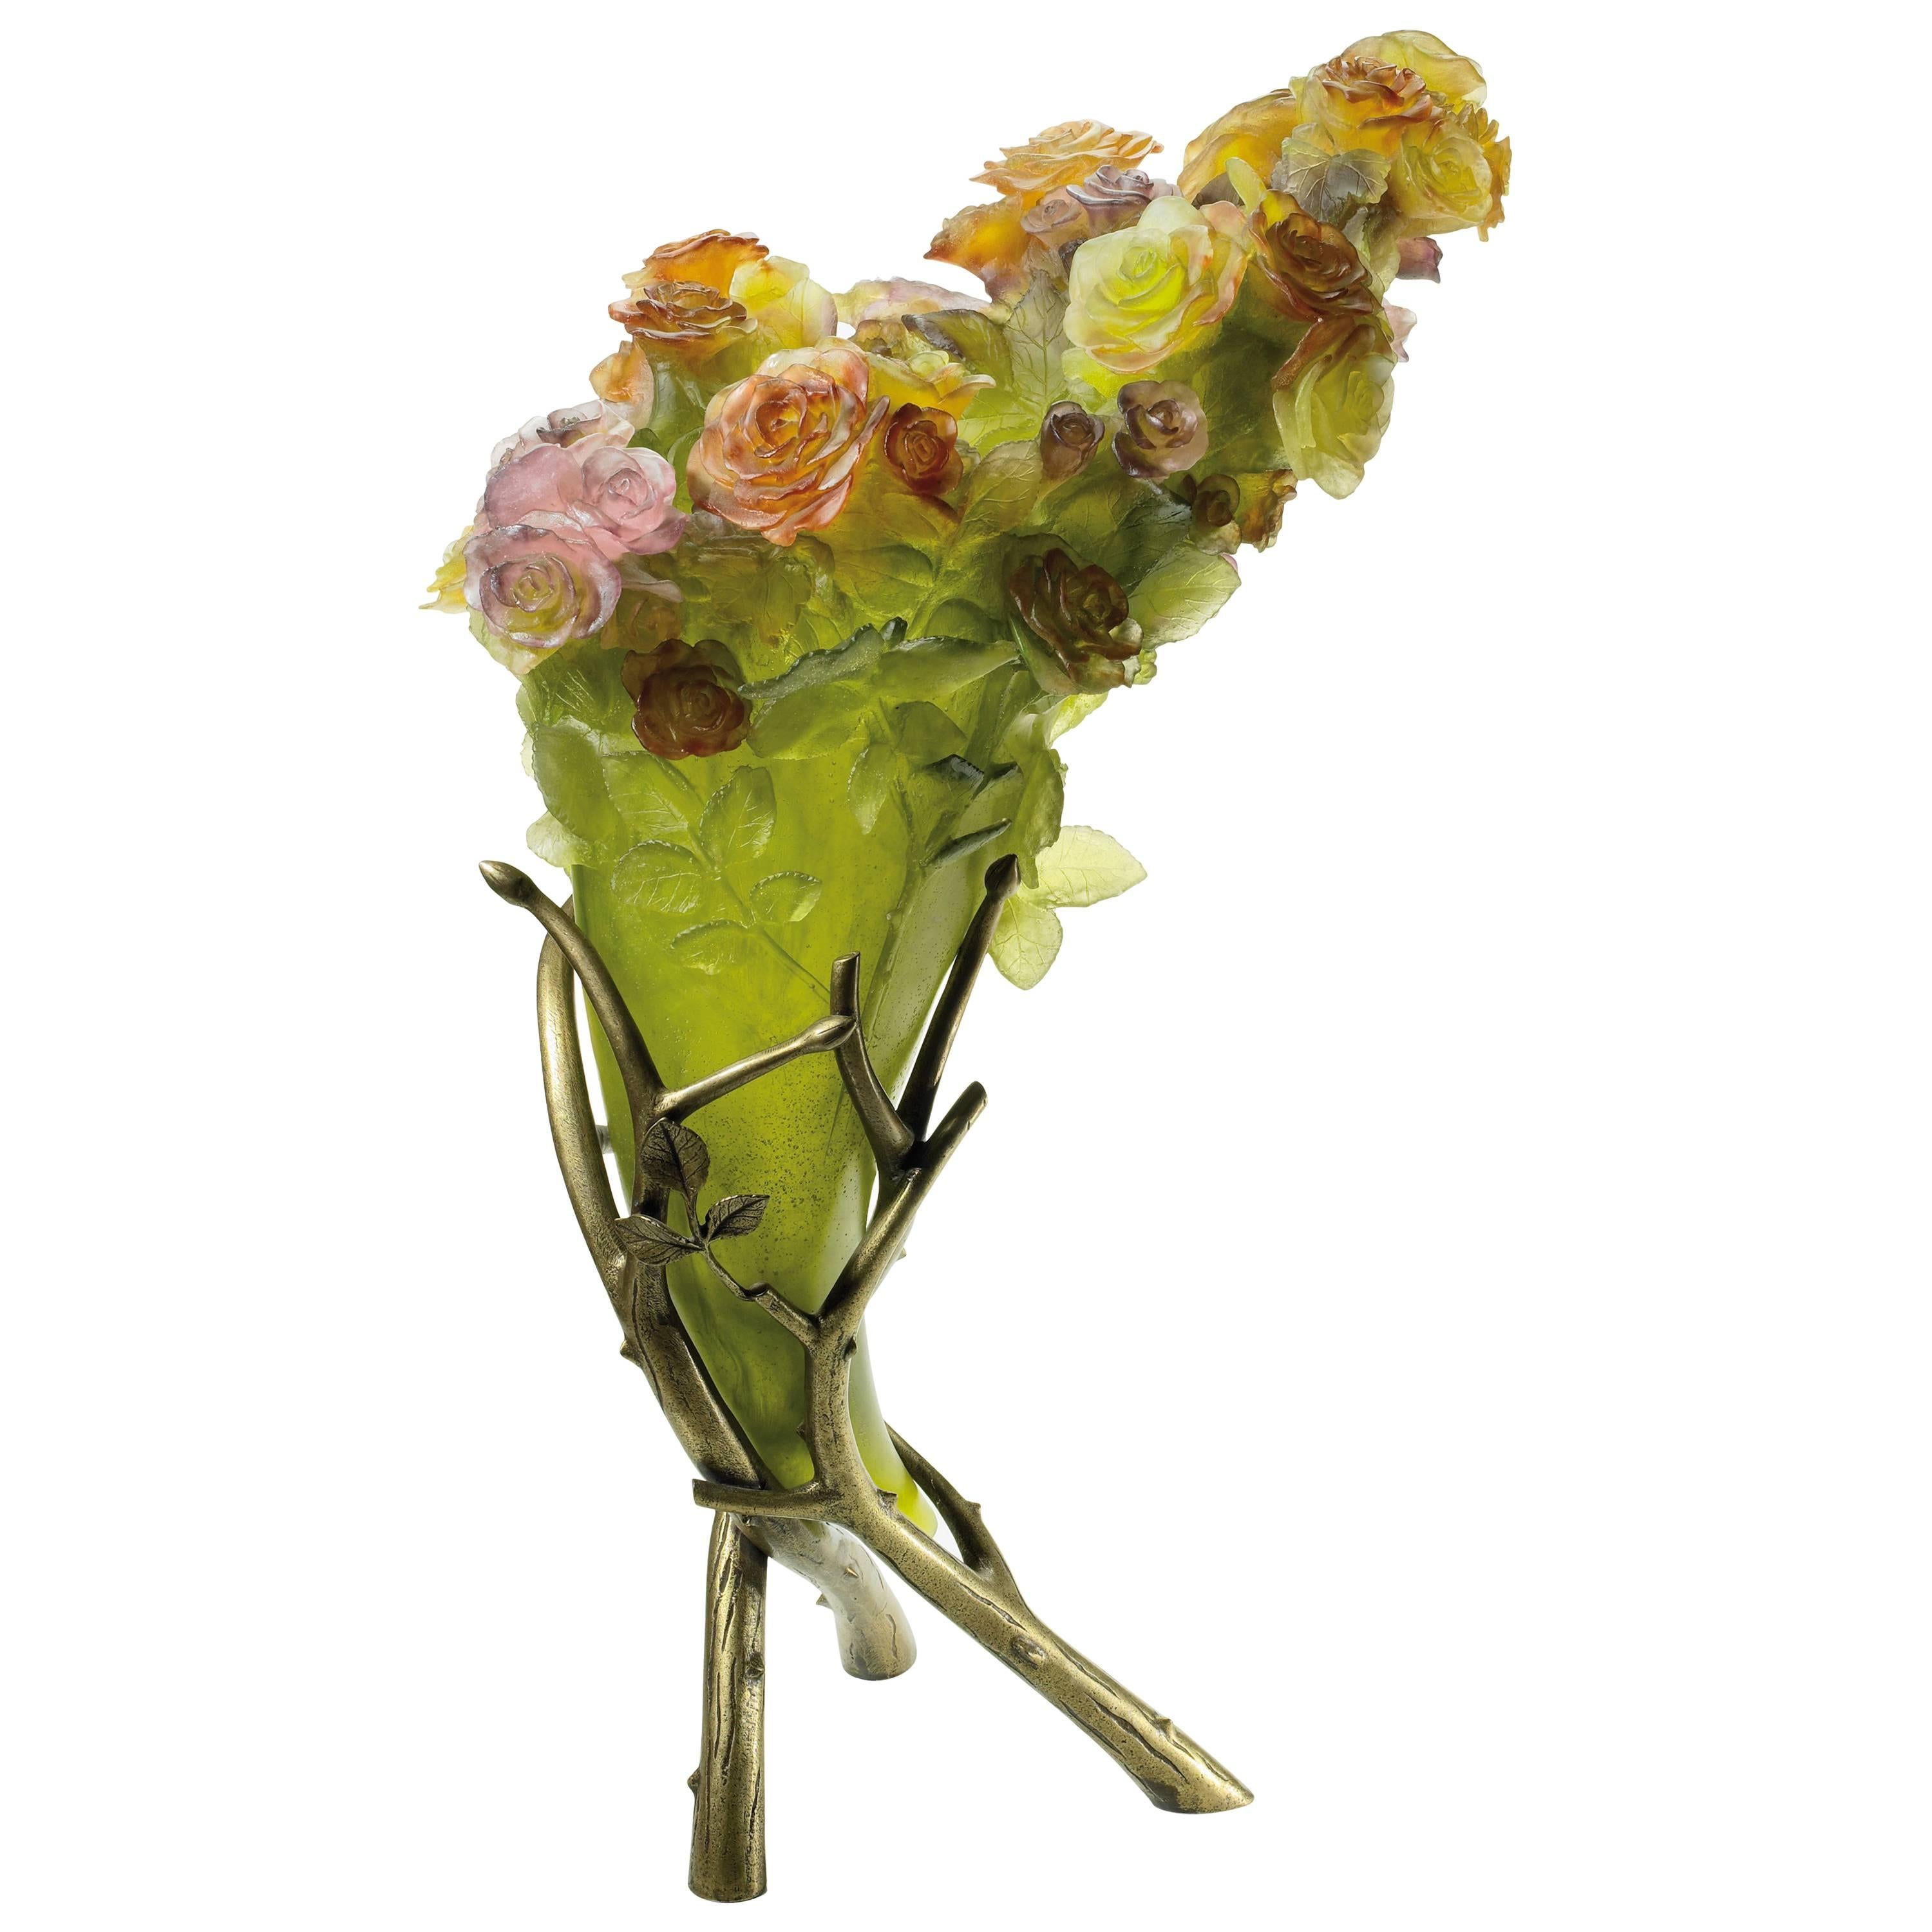 Limited Edition Pate De Verre Rose Flowers Sculpture "Corne D'abondance" by Daum For Sale